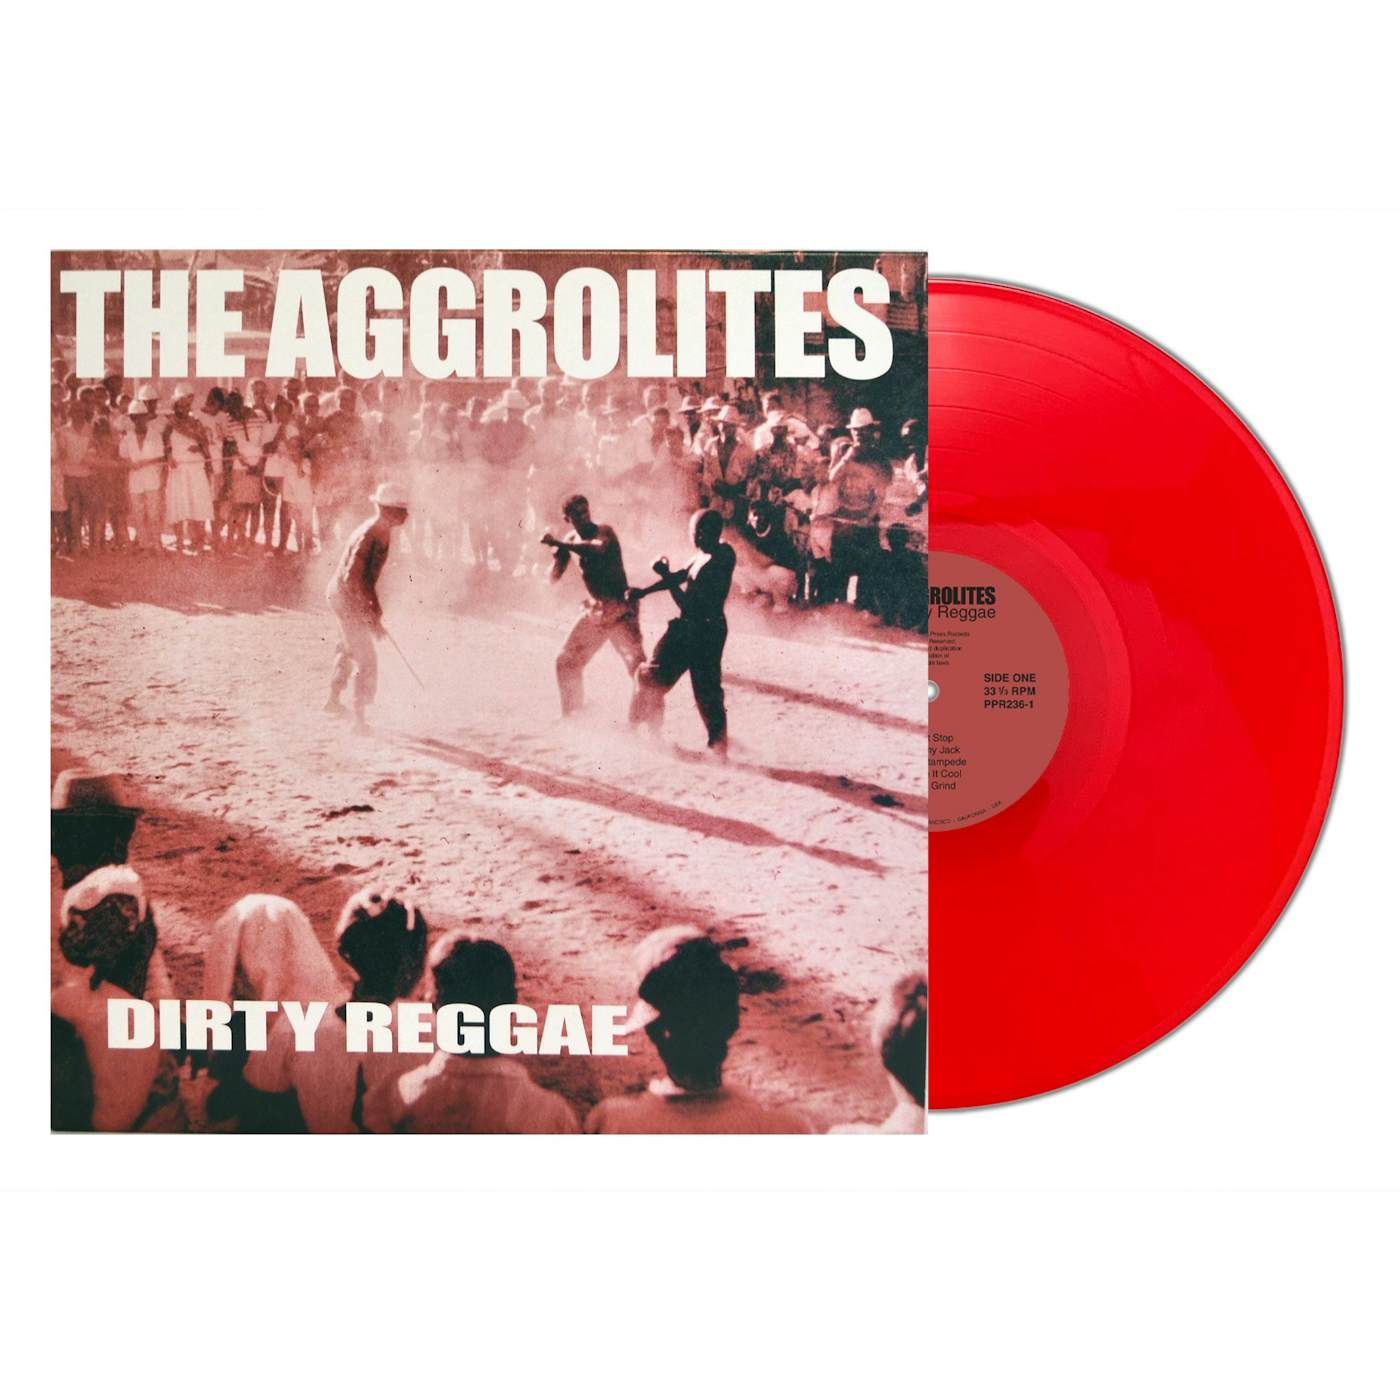 The Aggrolites - Dirty Reggae LP / CD (Vinyl)